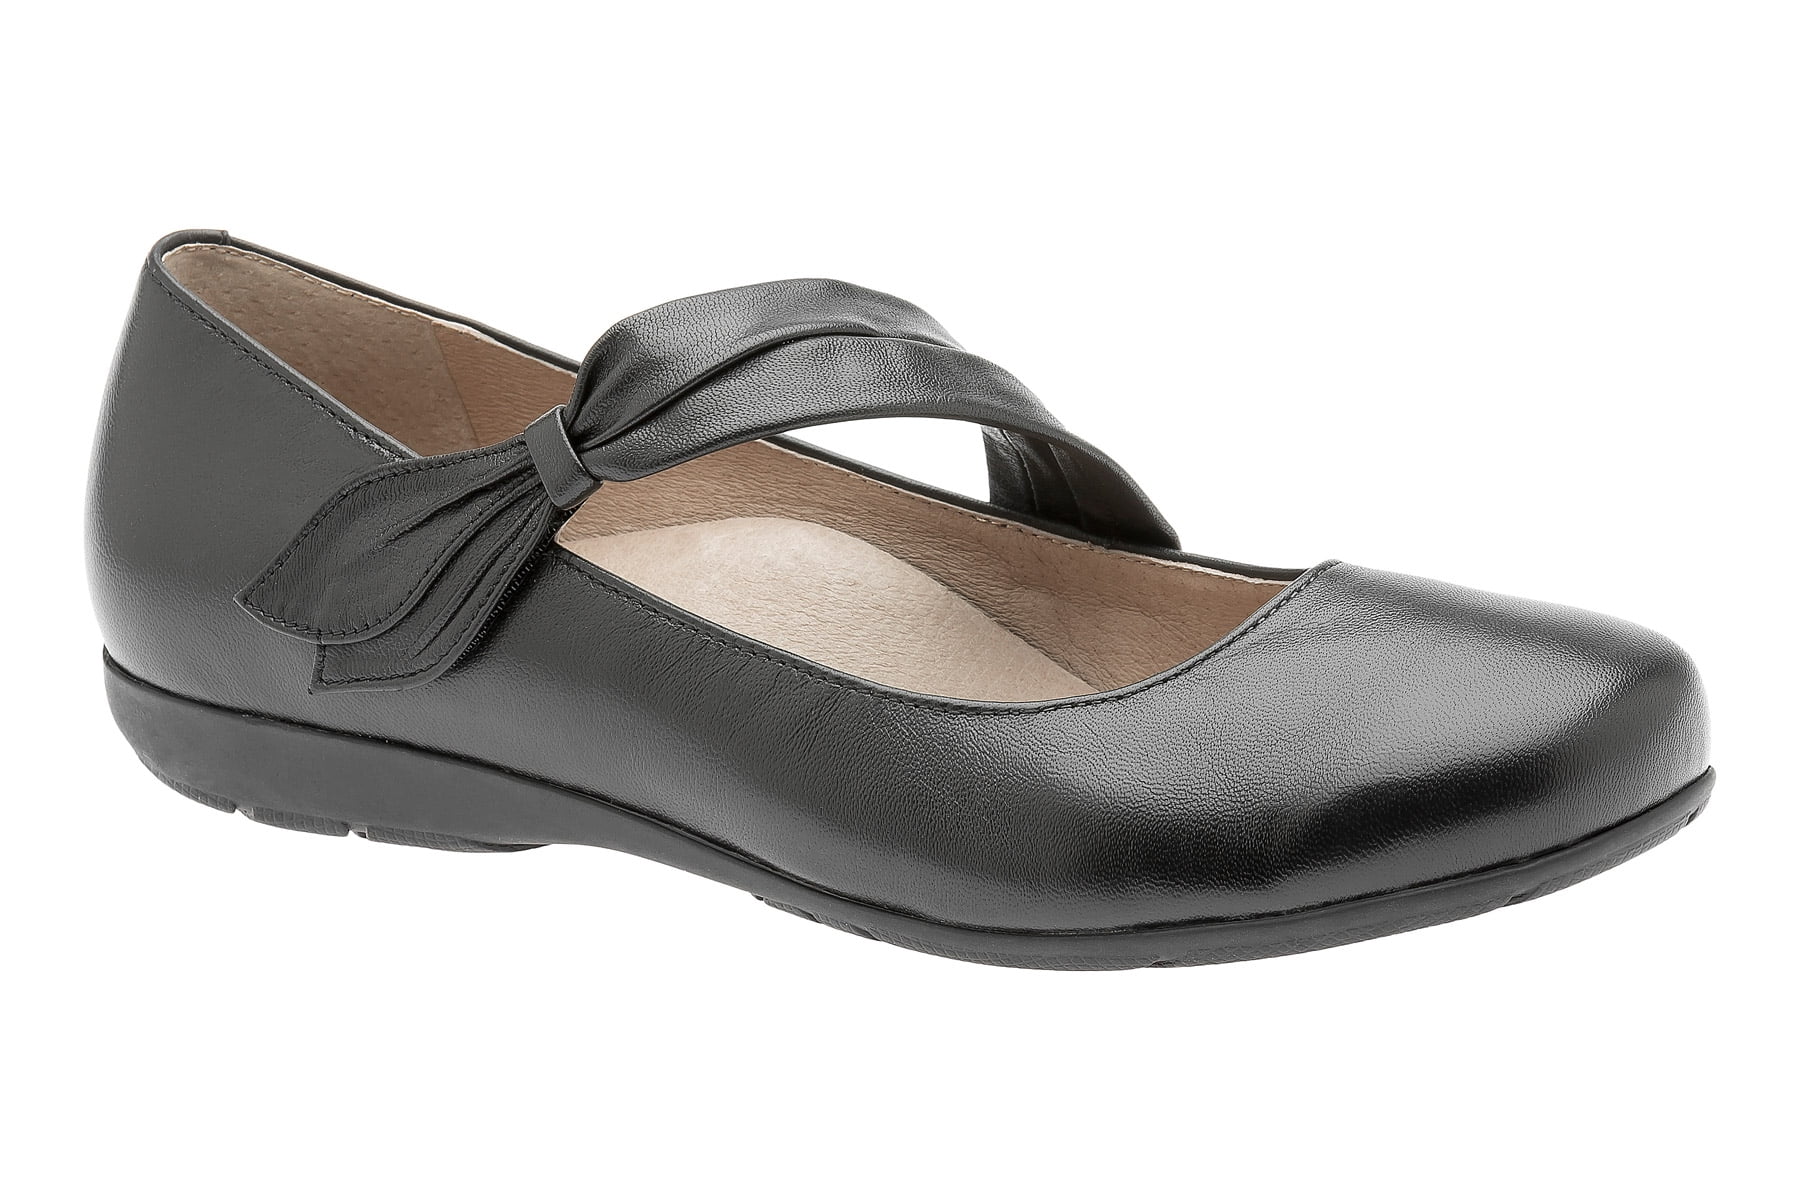 ABEO Footwear - ABEO Women's Talia Neutral - Dress Shoes - Walmart.com ...